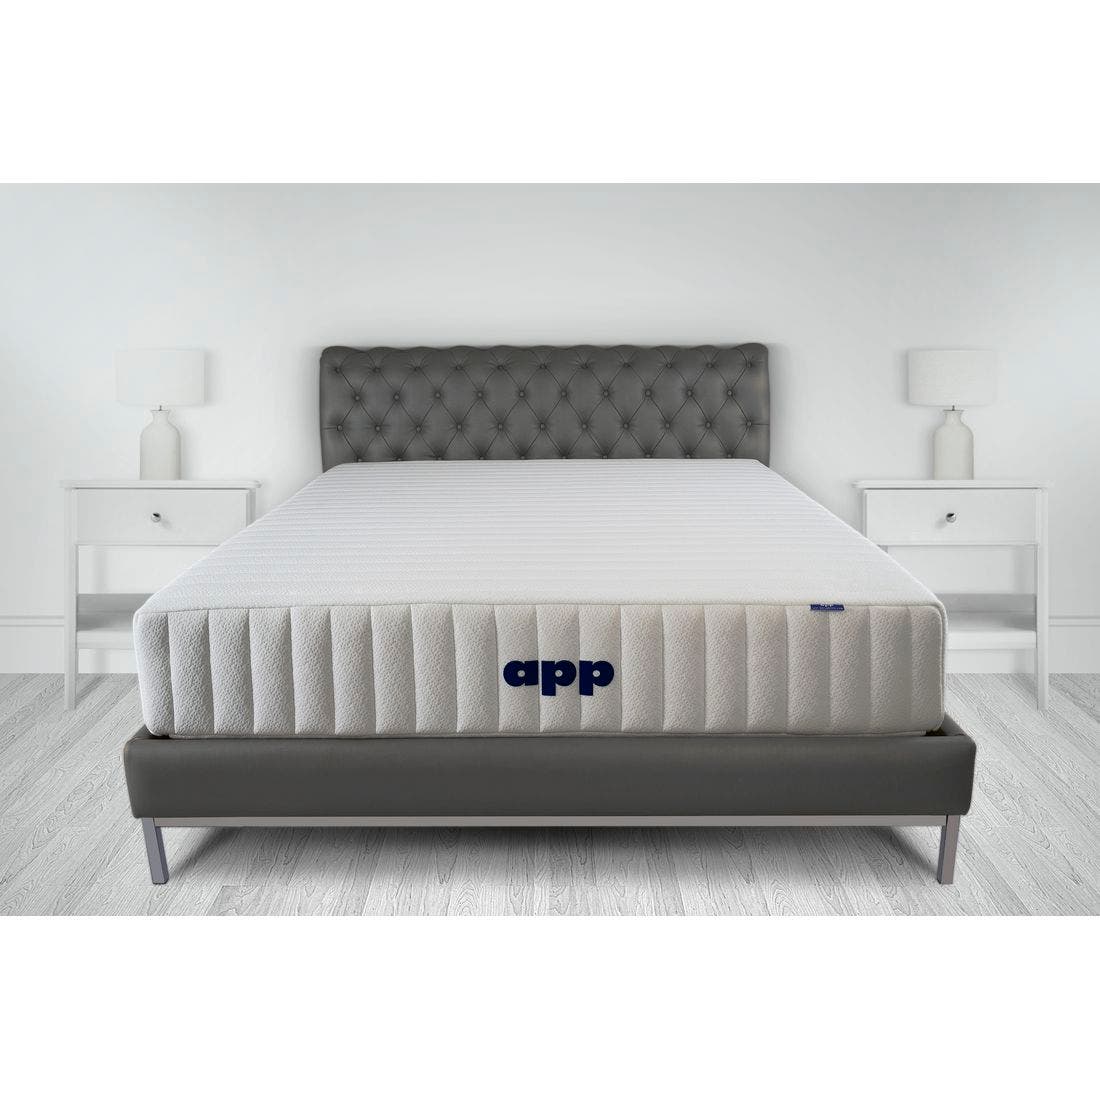 39015059-mattress-bedding-mattresses-pocket-spring-mattress-31